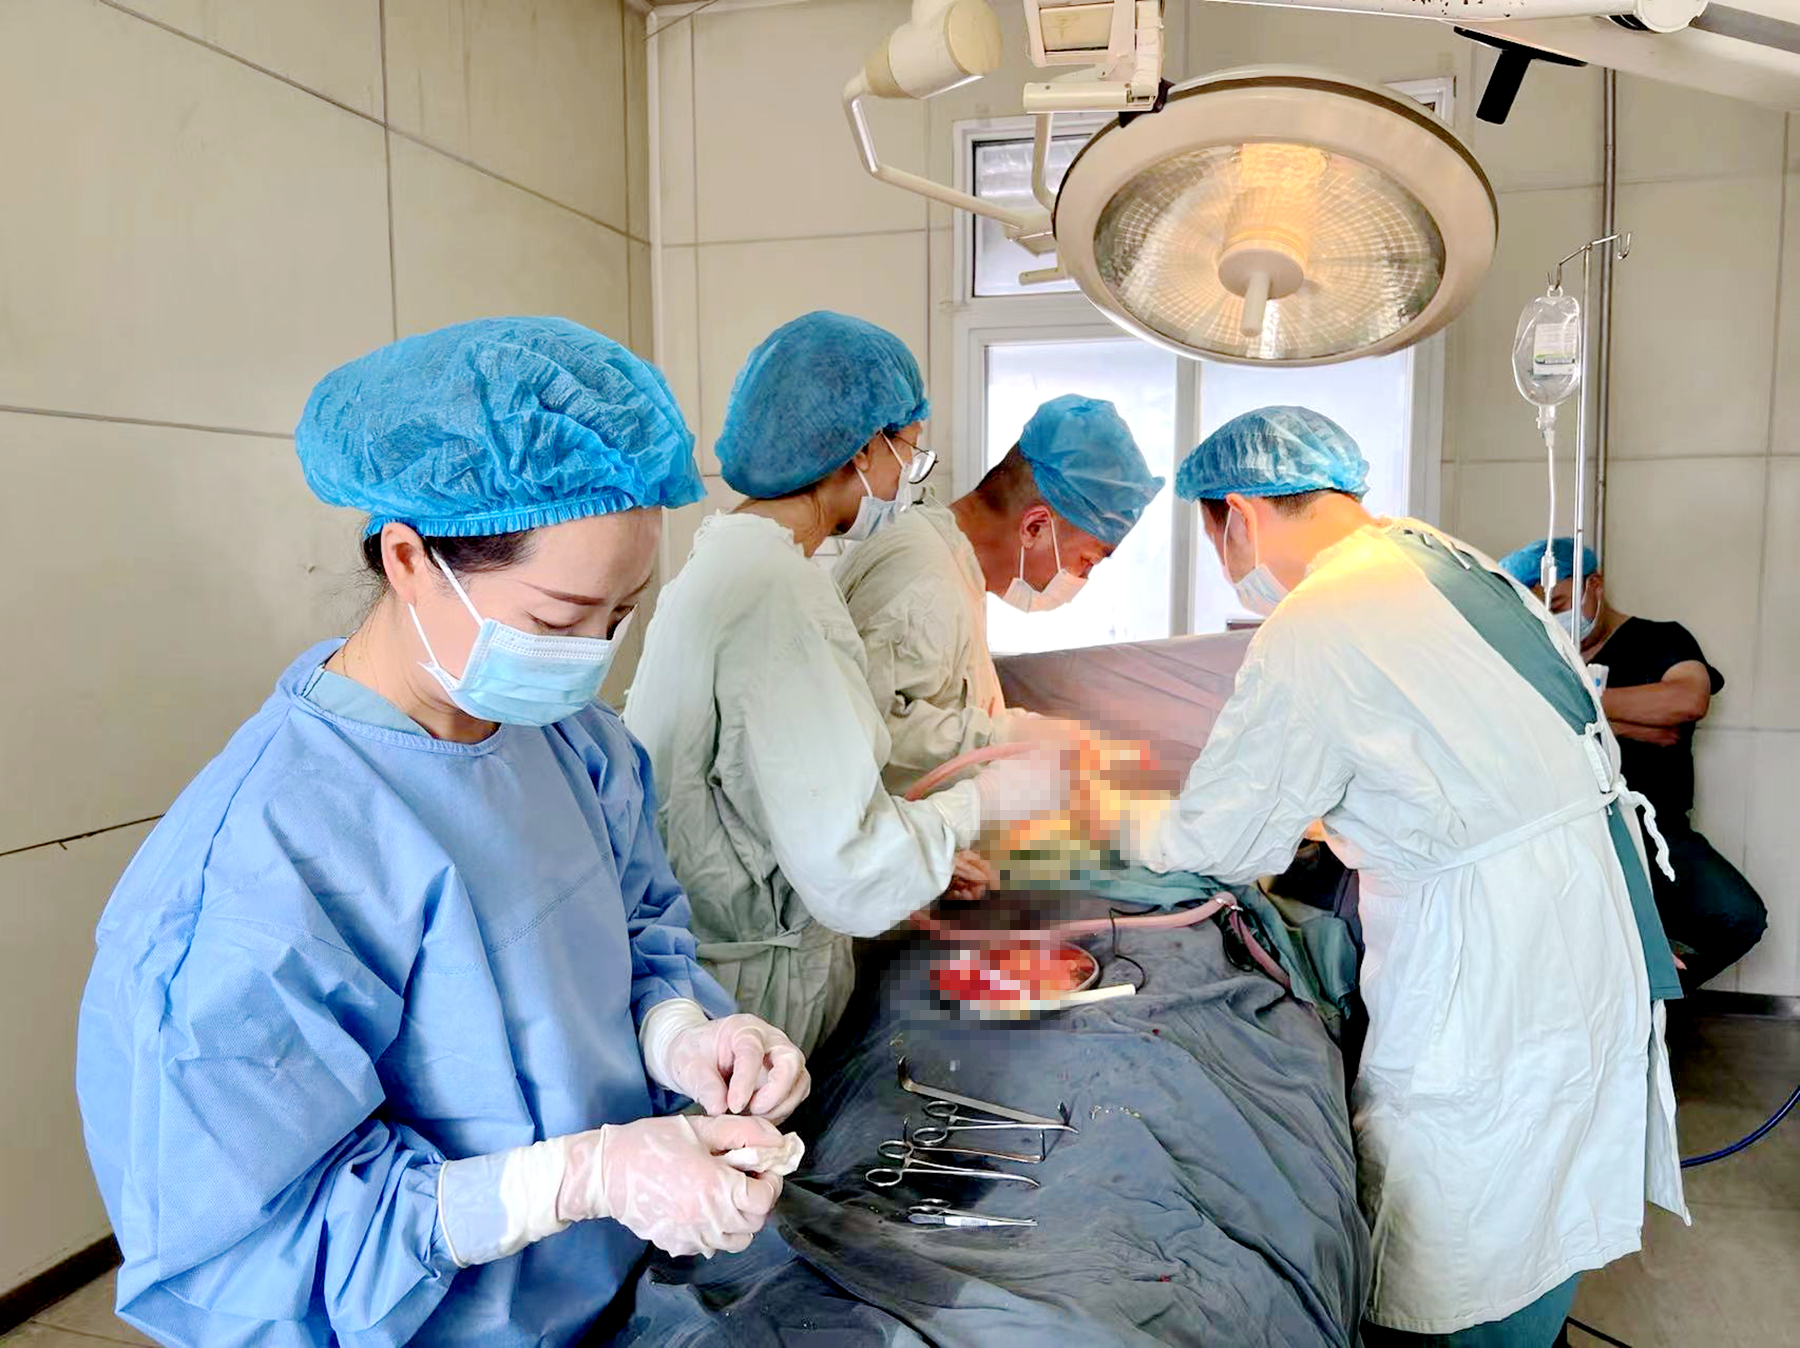 3201威尼斯人官网医成功完成一例注射隆胸术后一次性取出注射物及假体植入术